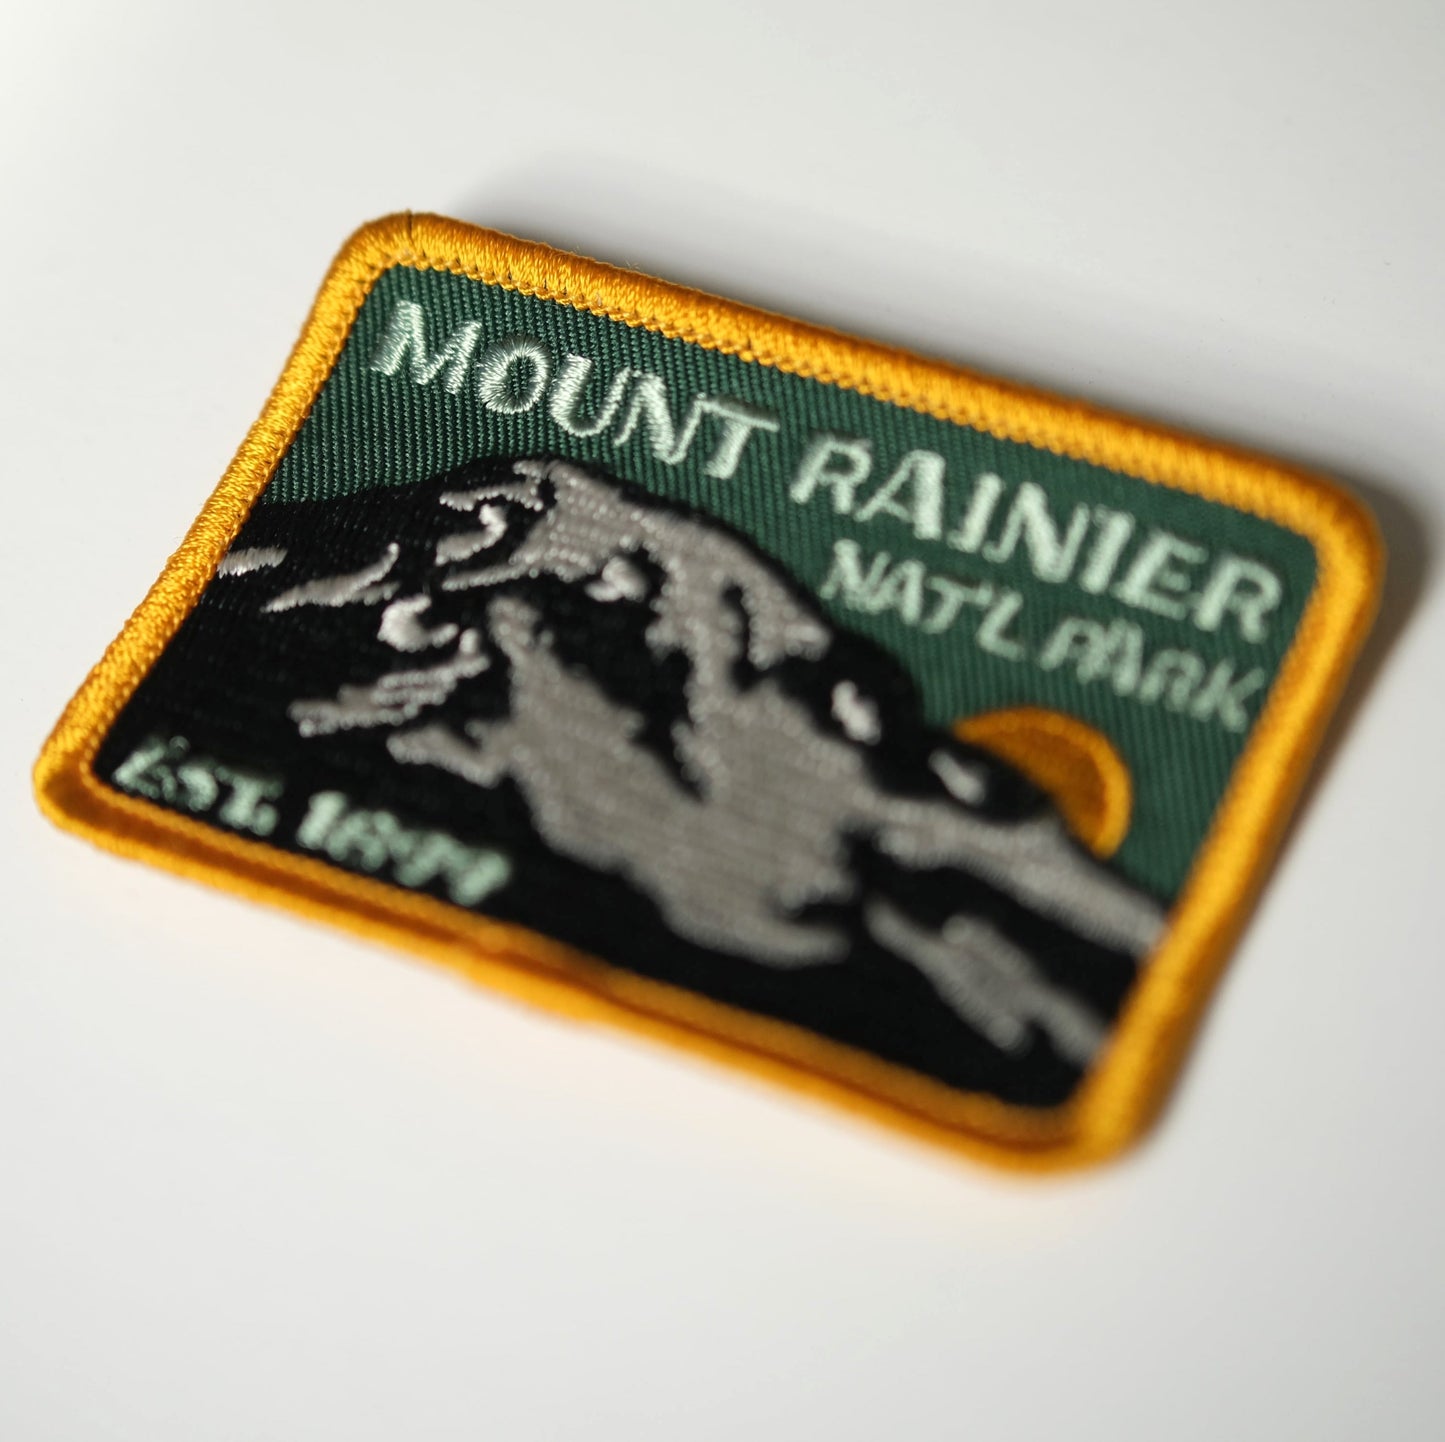 Mount Rainier National Park Est 1899 Patch